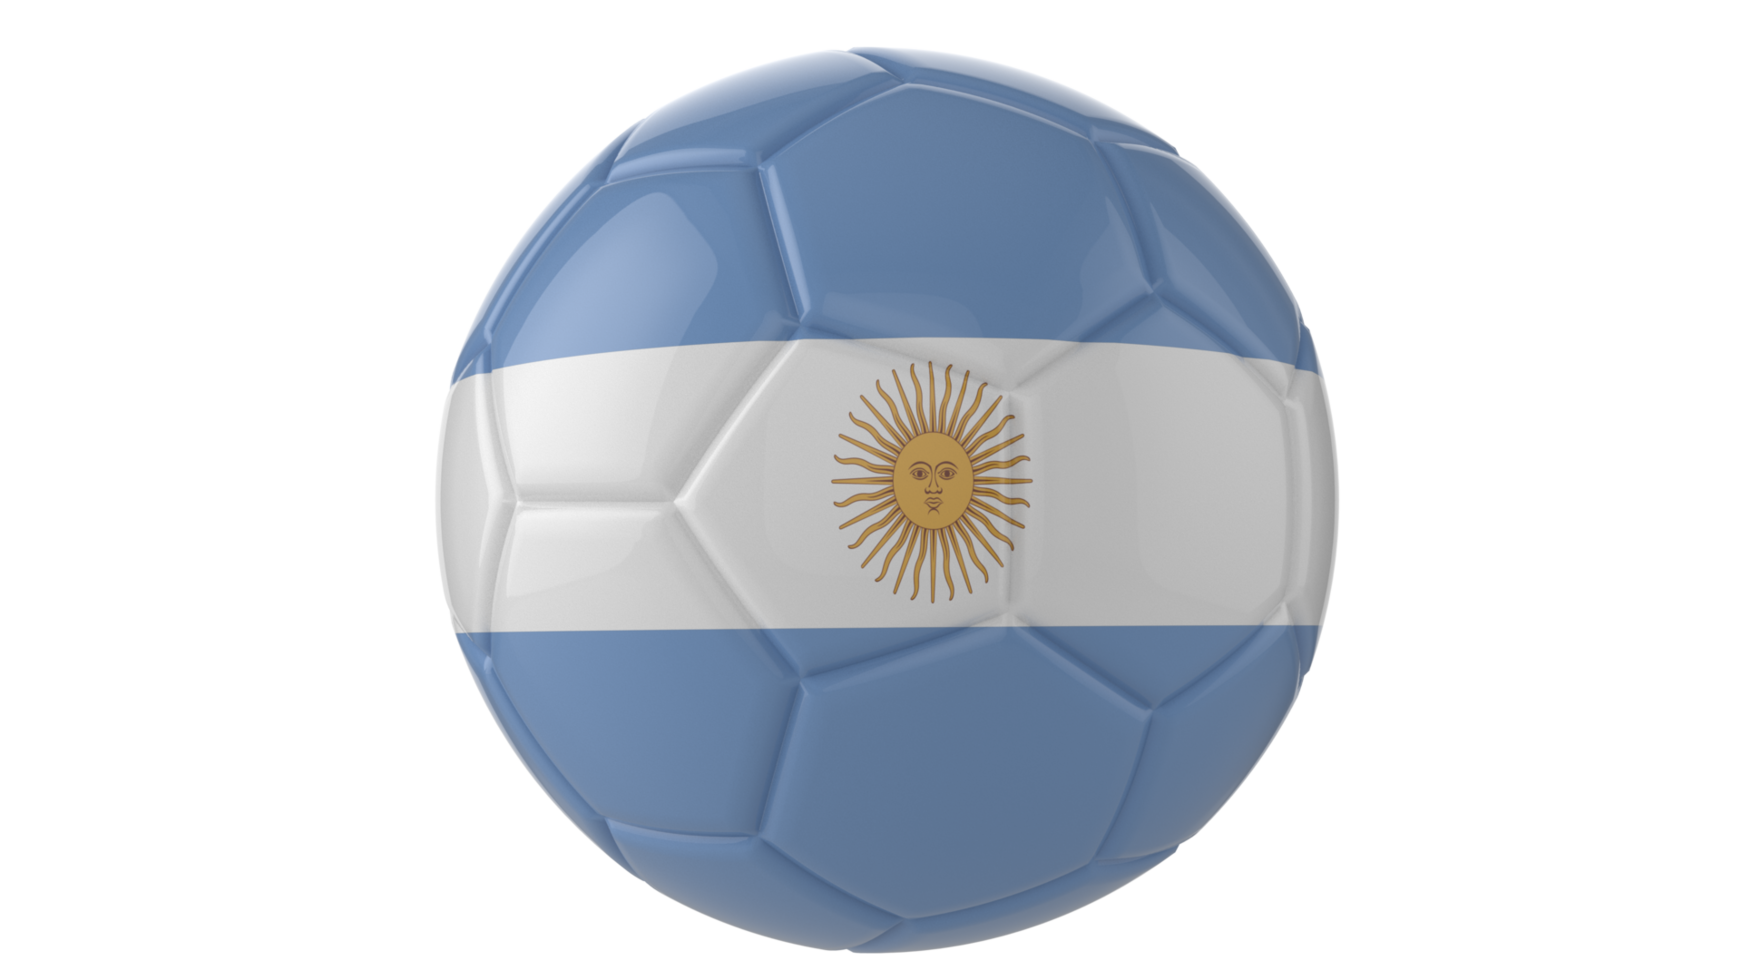 Ballon de football réaliste 3d avec le drapeau de l'uruguay dessus isolé sur fond png transparent